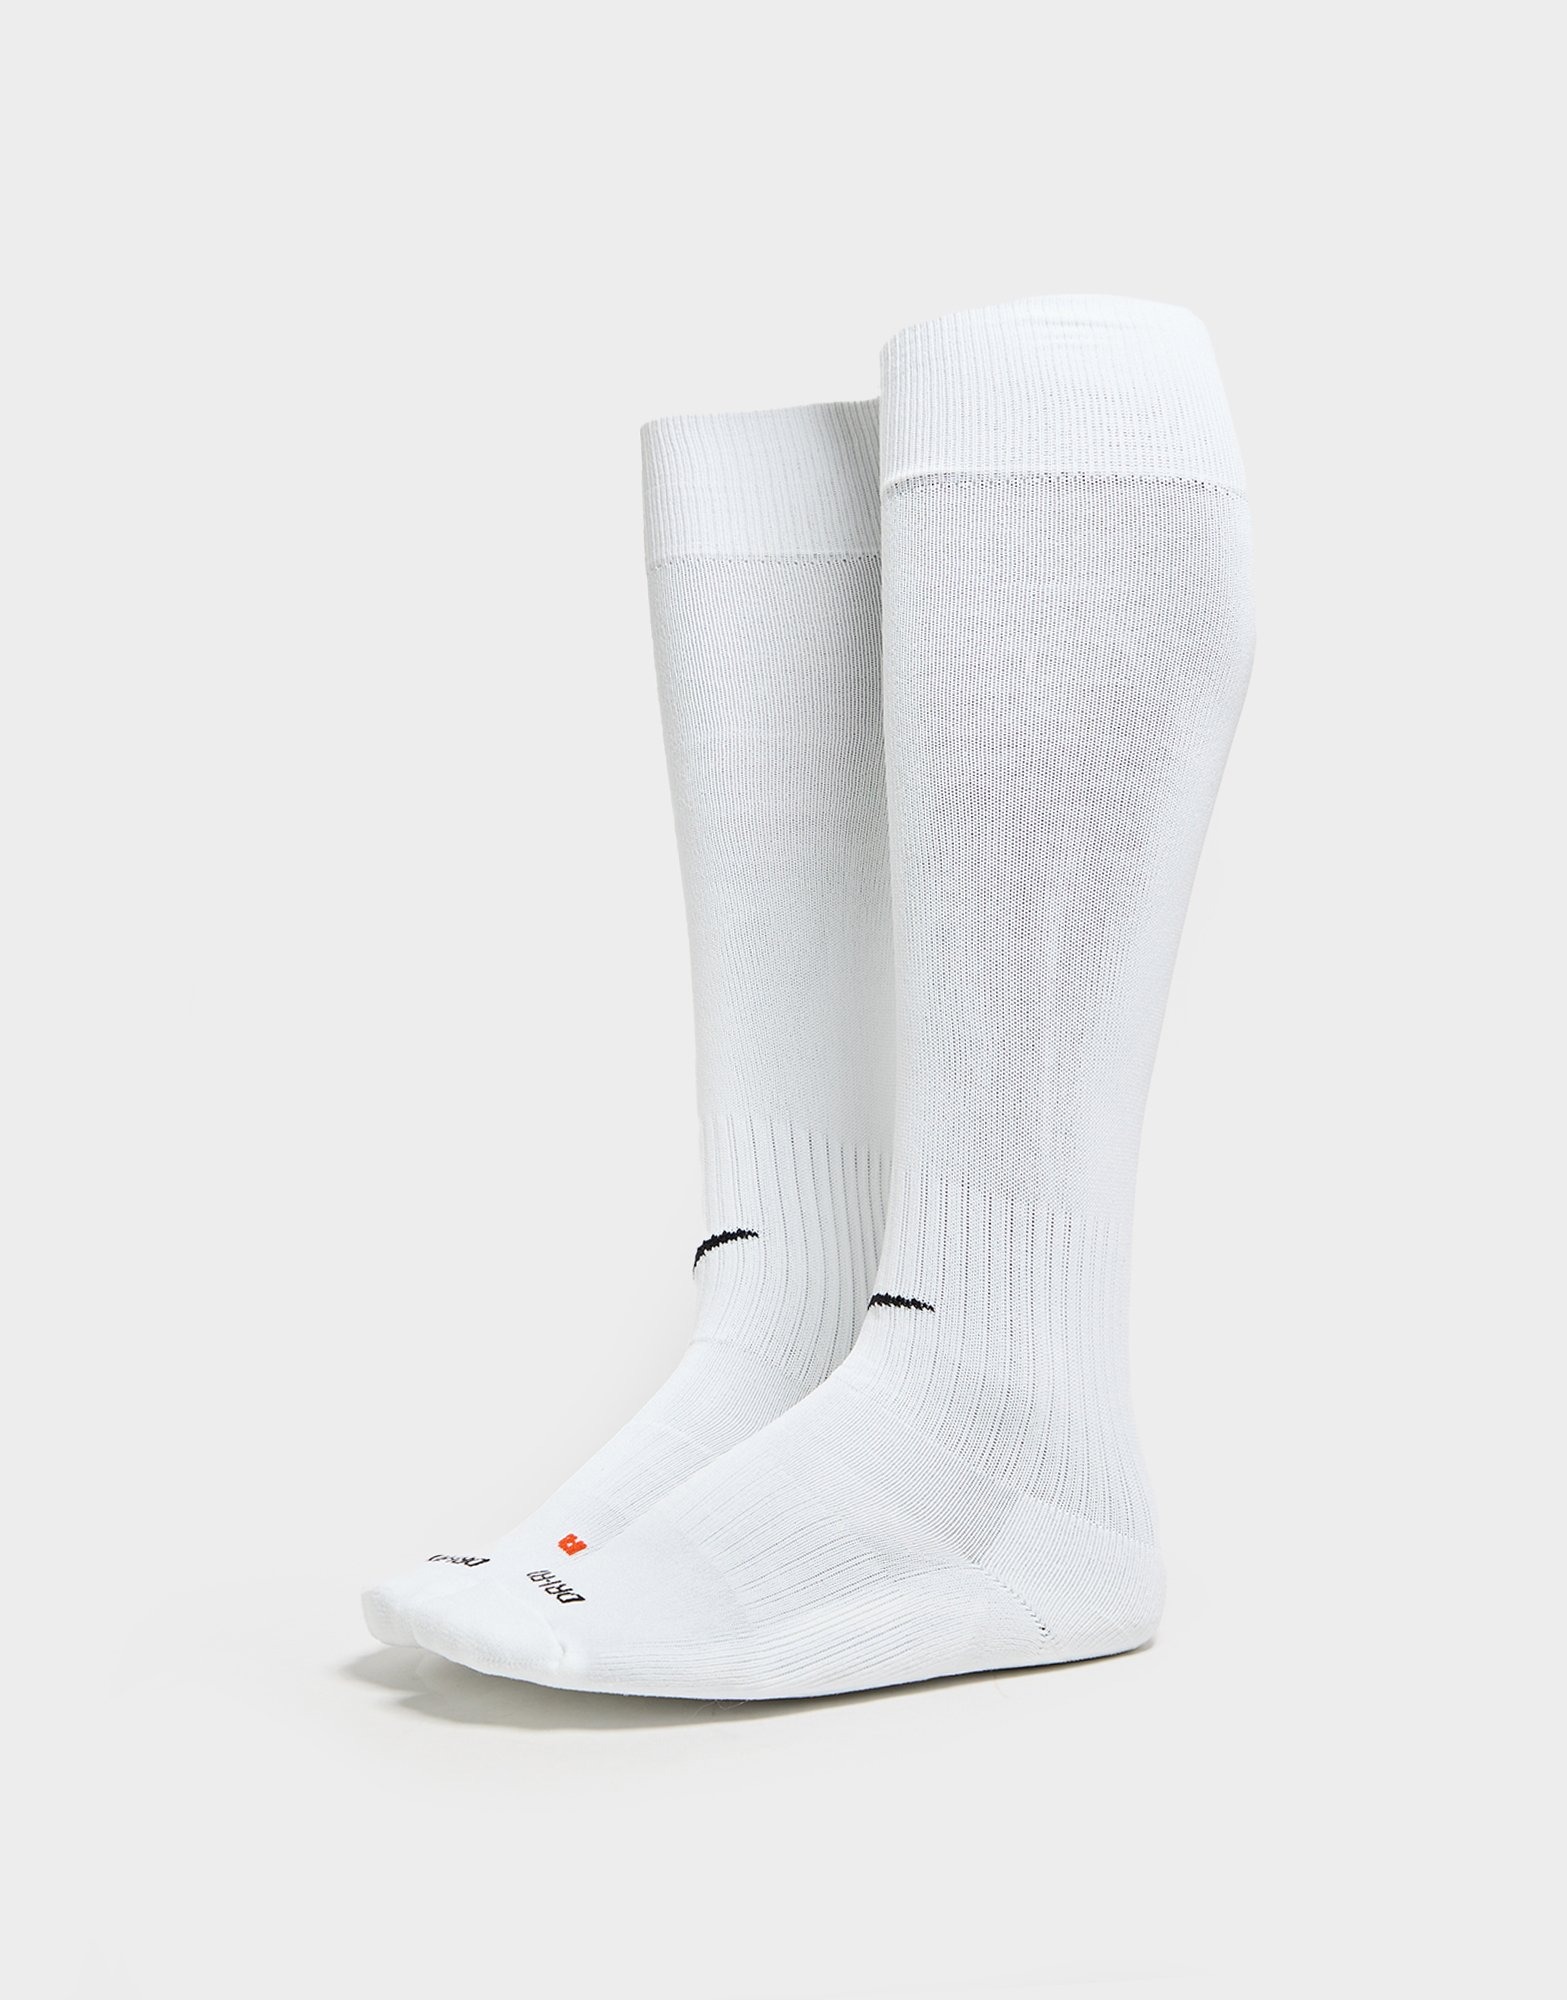 White Nike Classic Football Socks | JD Sports UK